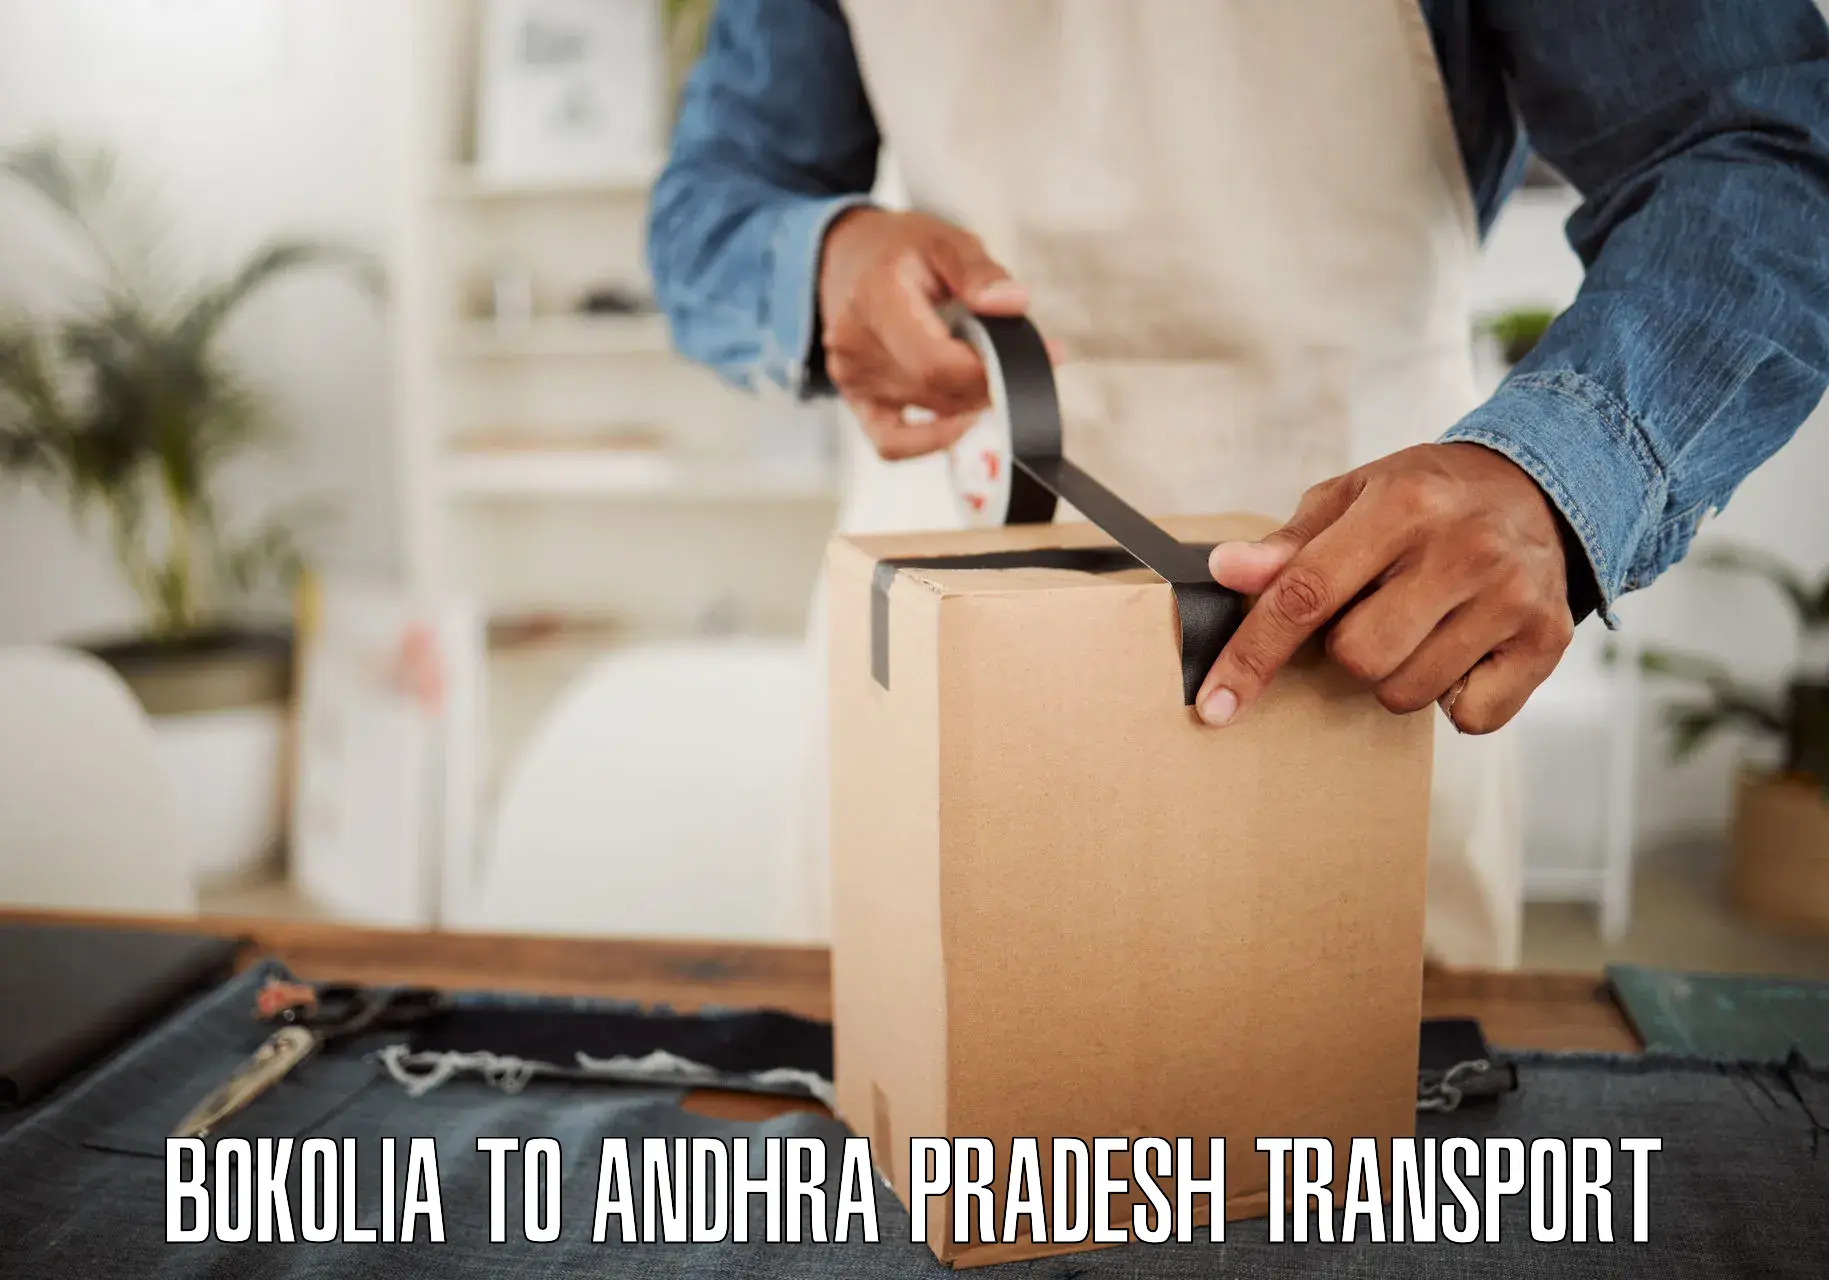 Commercial transport service Bokolia to Tirupati